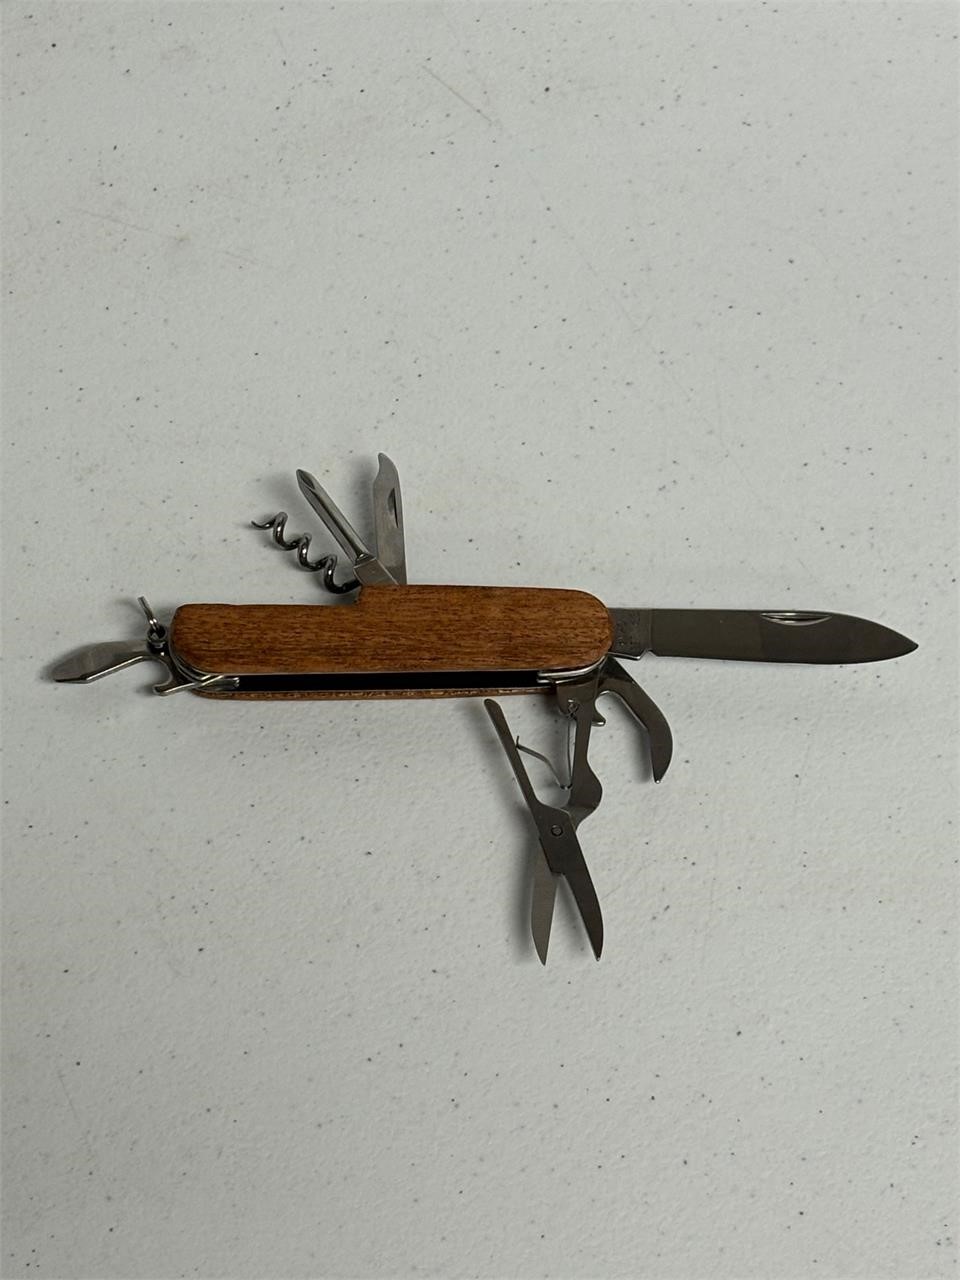 Multi Tool Pocket Knife